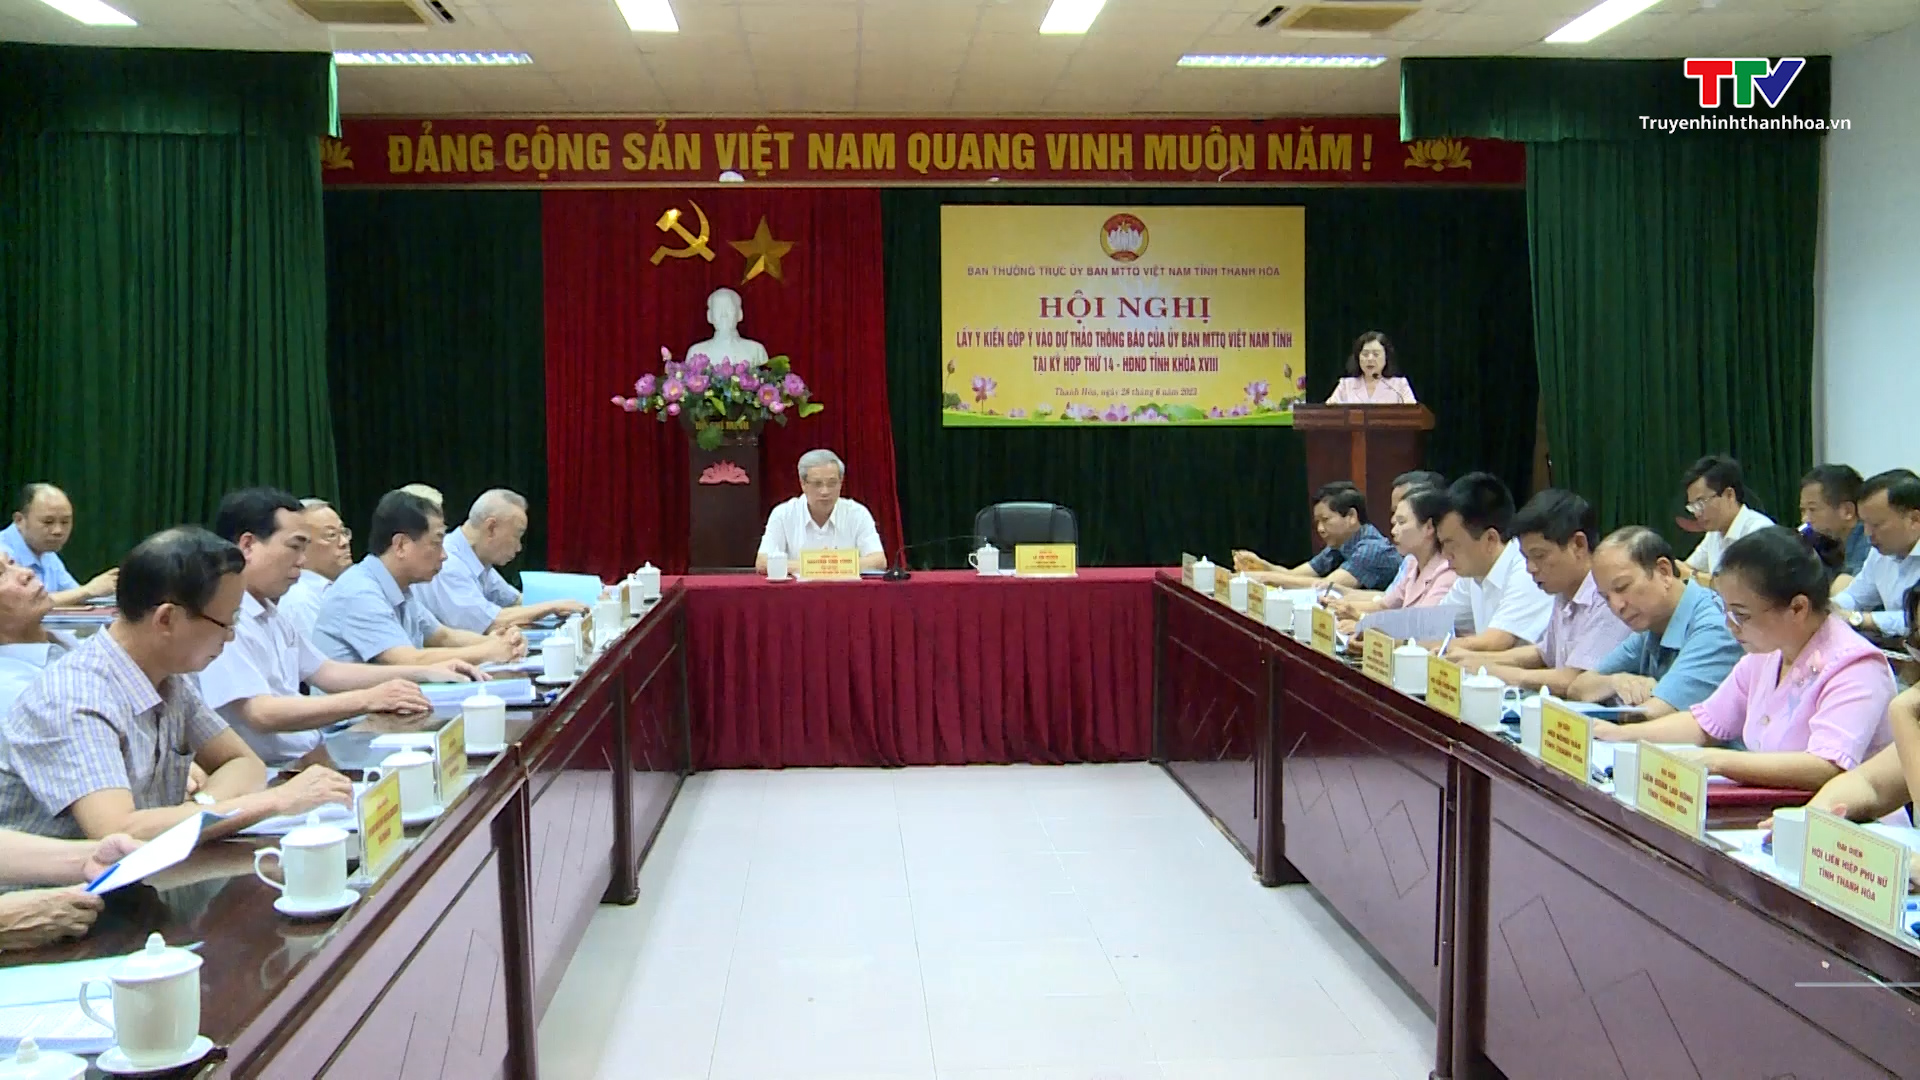 Hội nghị lấy ý kiến góp ý vào dự thảo thông báo của Ủy ban Mặt trận Tổ quốc Việt Nam tỉnh Thanh Hóa tại Kỳ họp thứ 14, Hội đồng nhân dân tỉnh khóa XVIII - Ảnh 2.